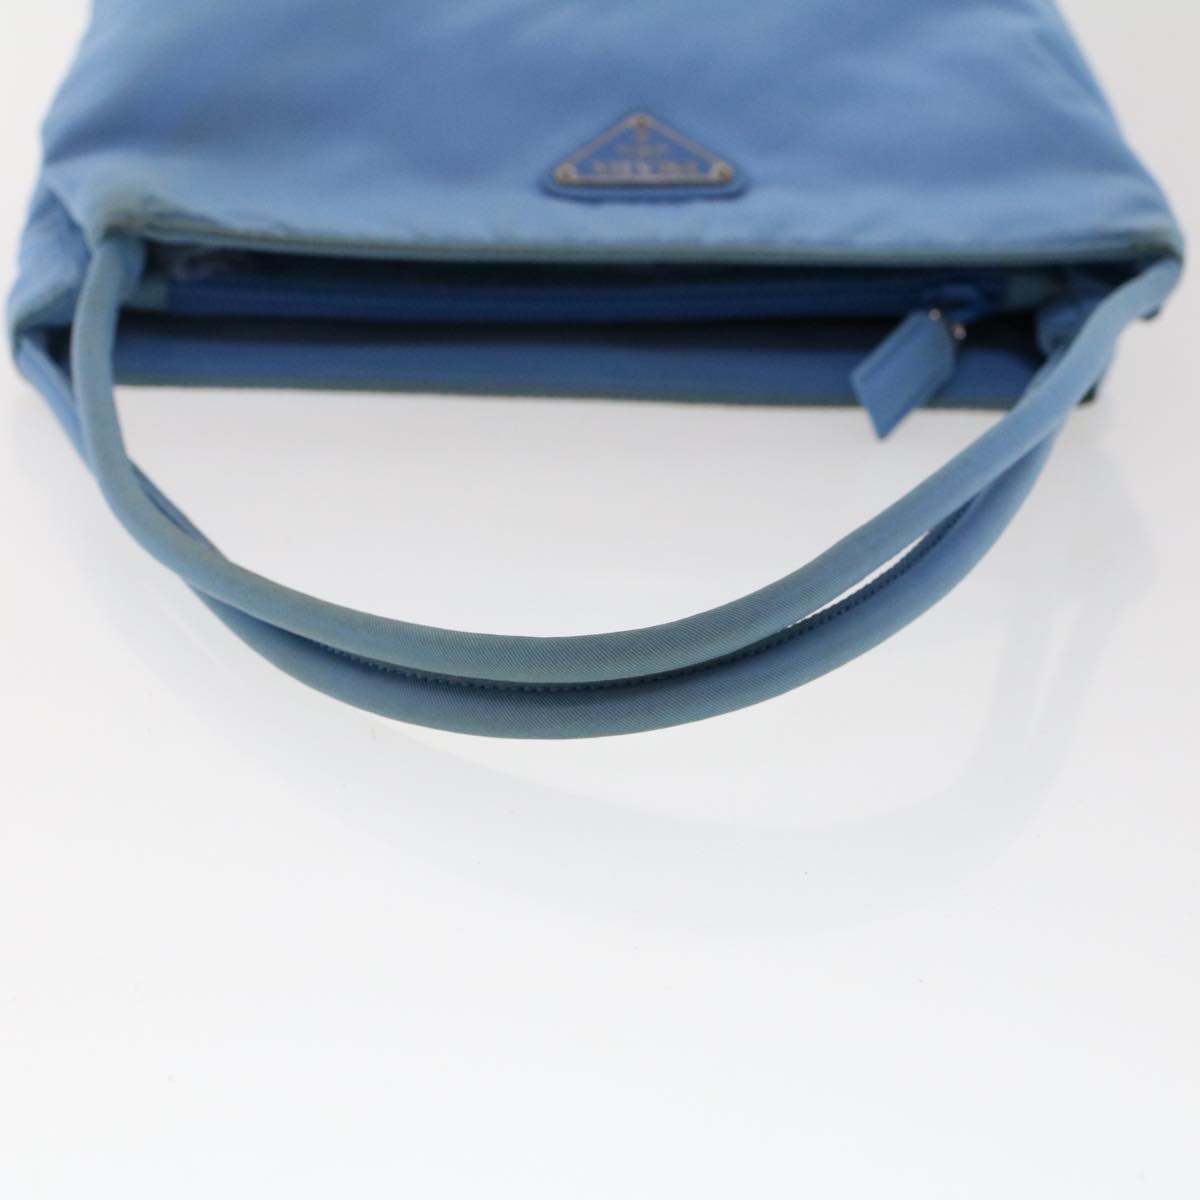 PRADA Hand Bag Nylon Light Blue Auth 49028